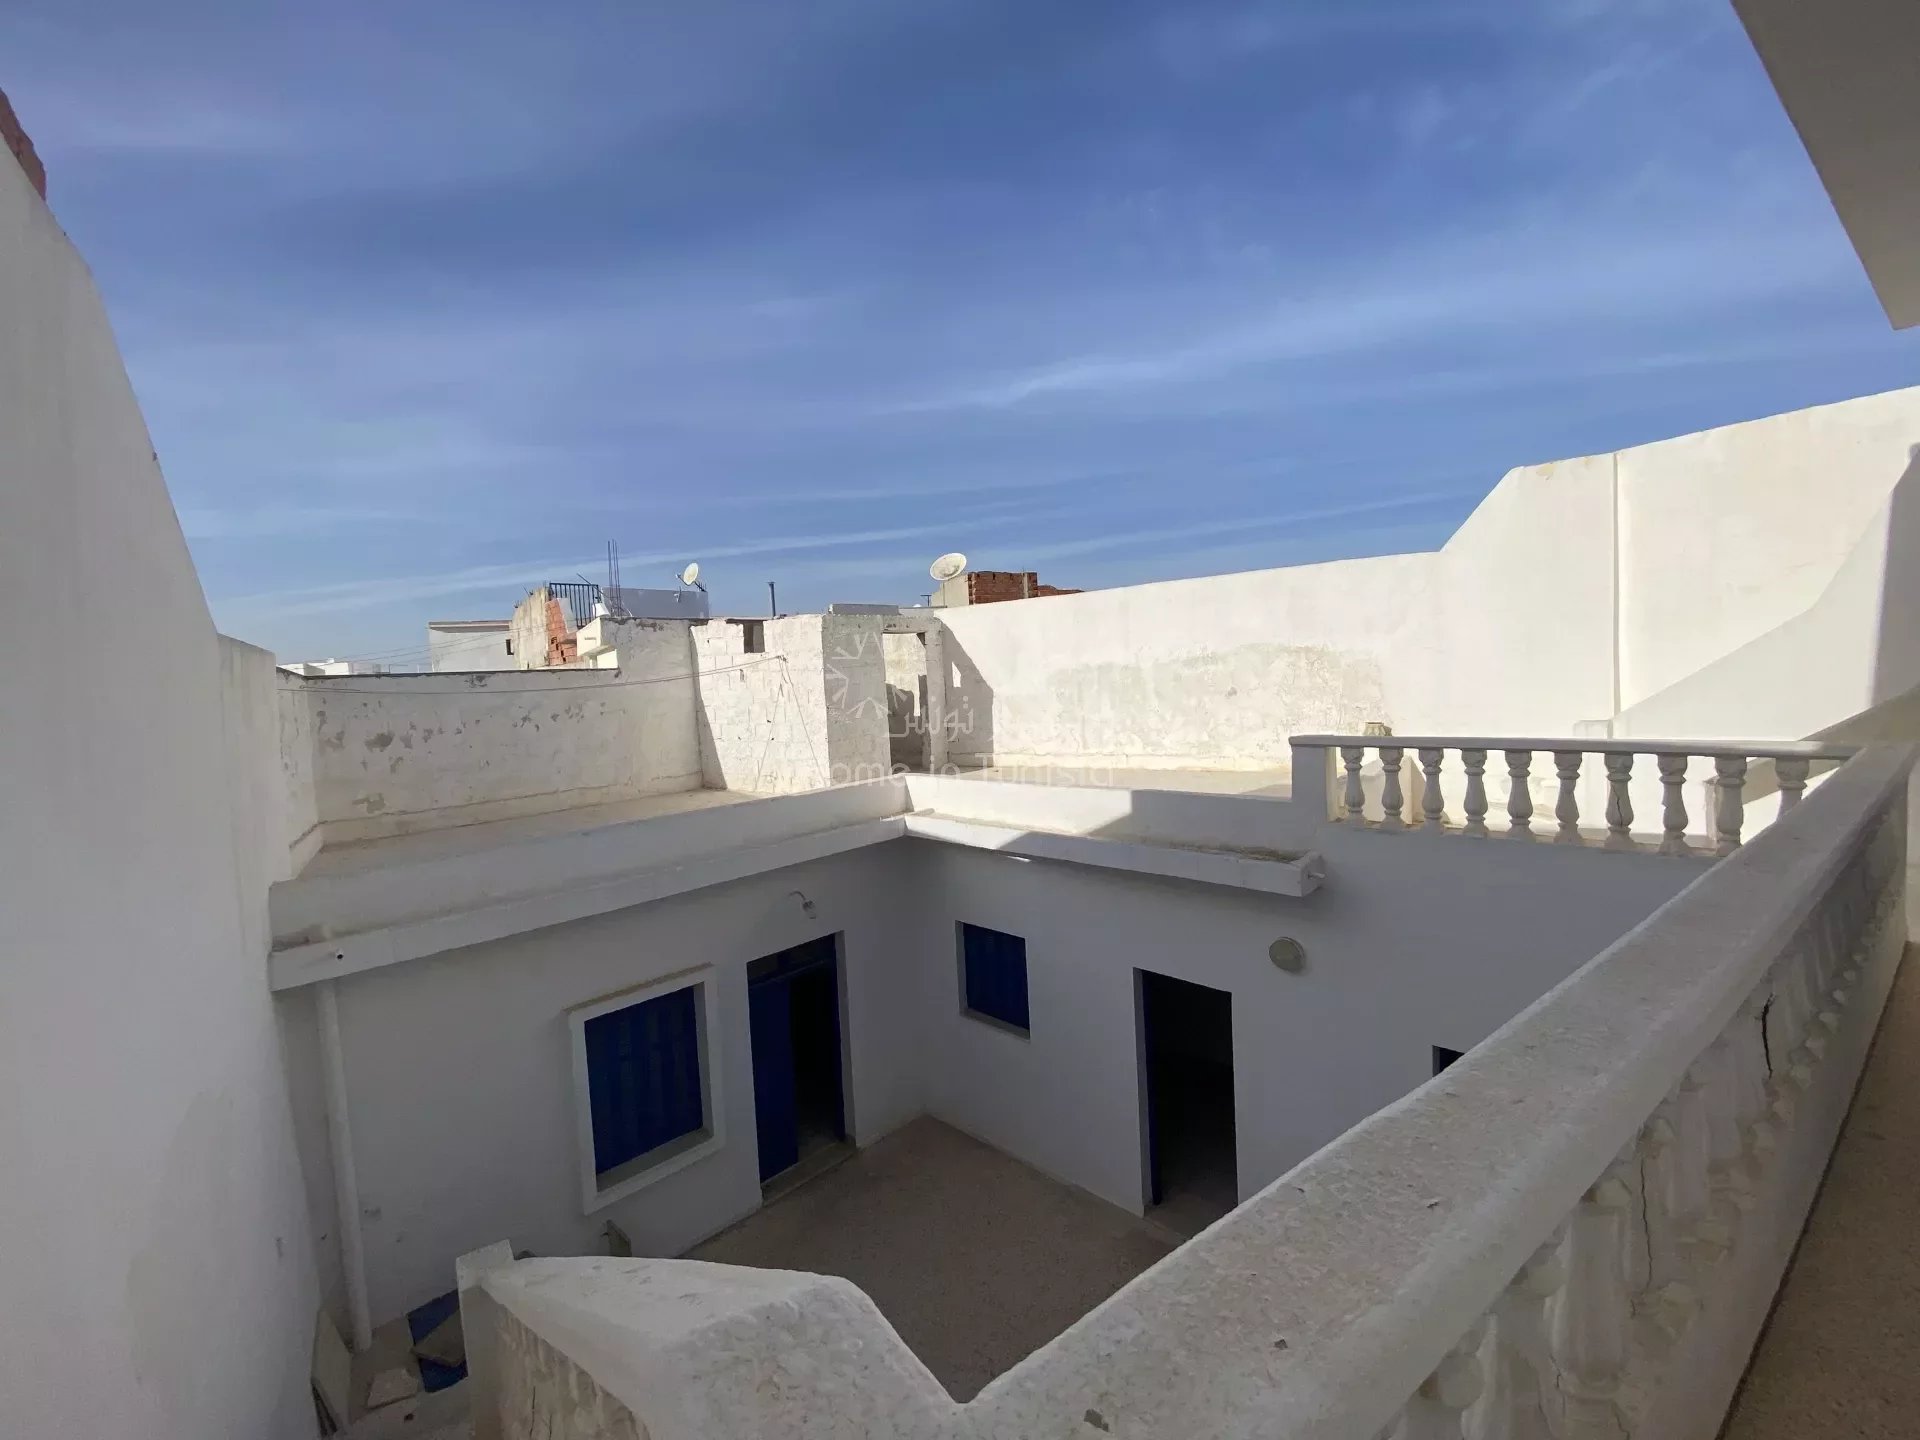 A vendre maison traditionelle hammam Sousse Ghrabi